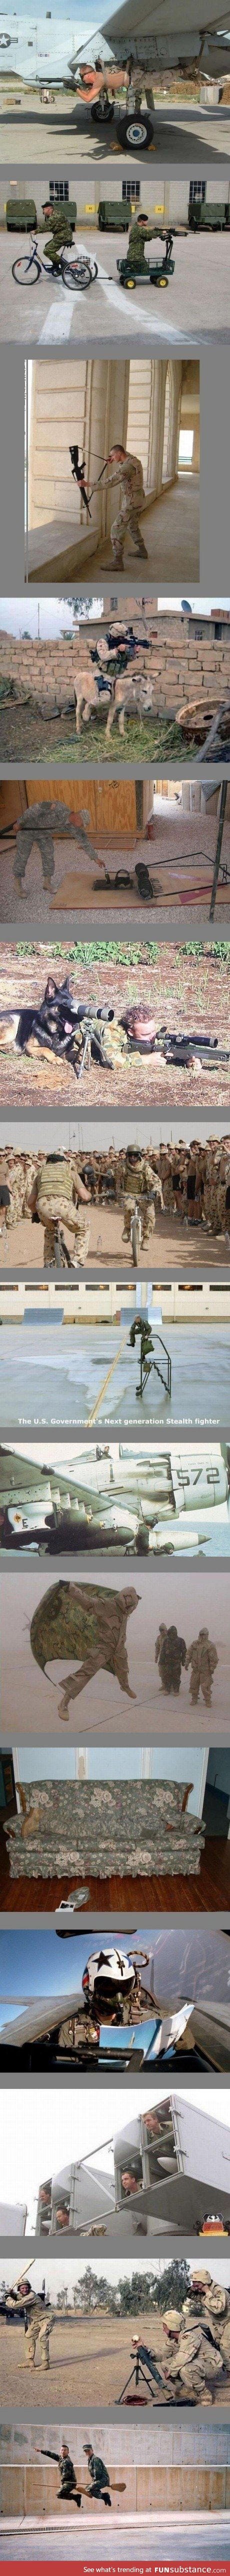 Soldiers having fun